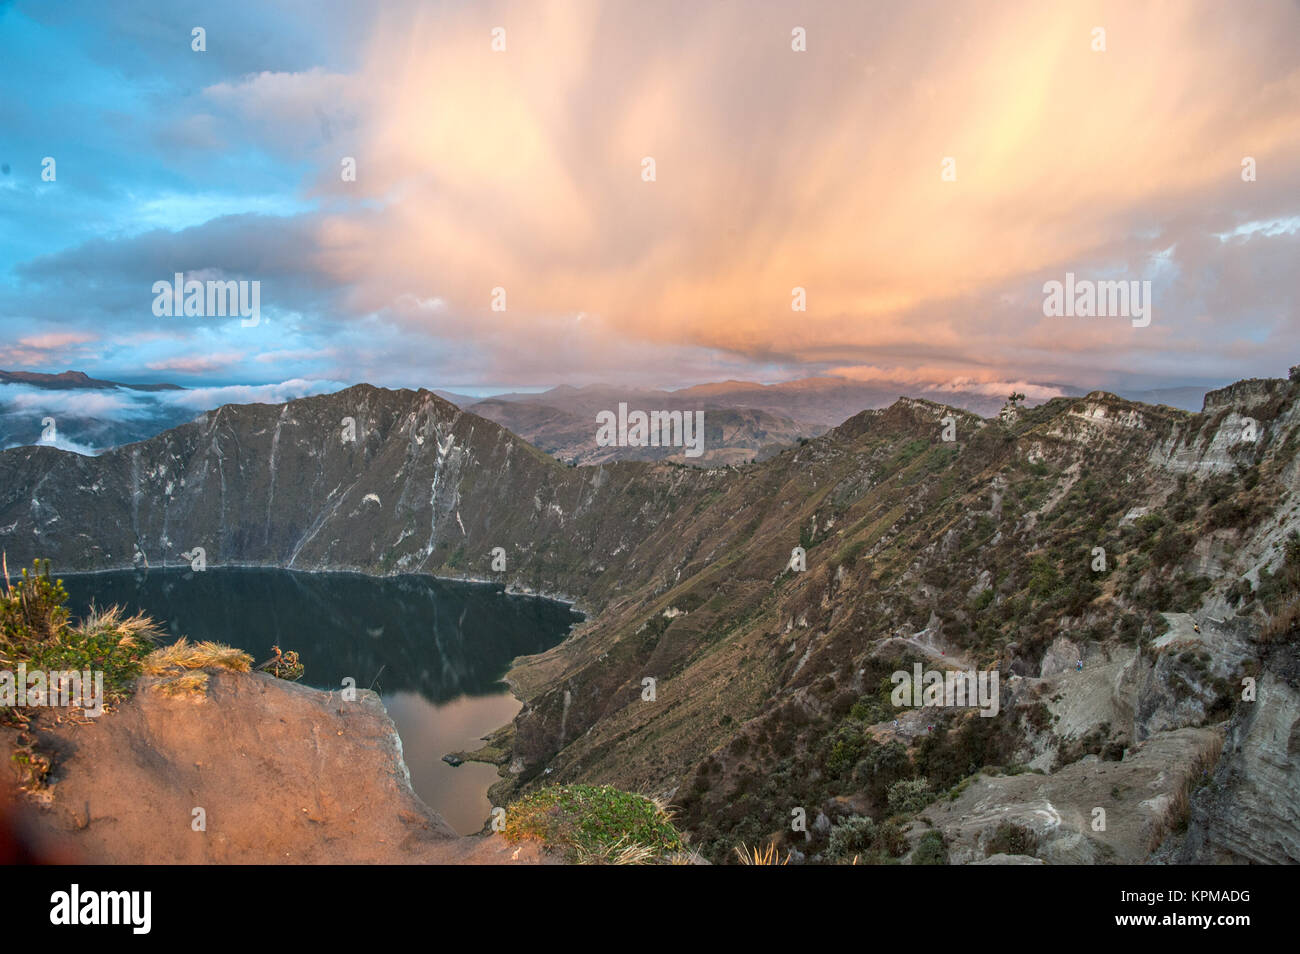 La Lagune de Quilotoa, Andes. Réserve naturelle, l'Équateur Ilinizas Banque D'Images